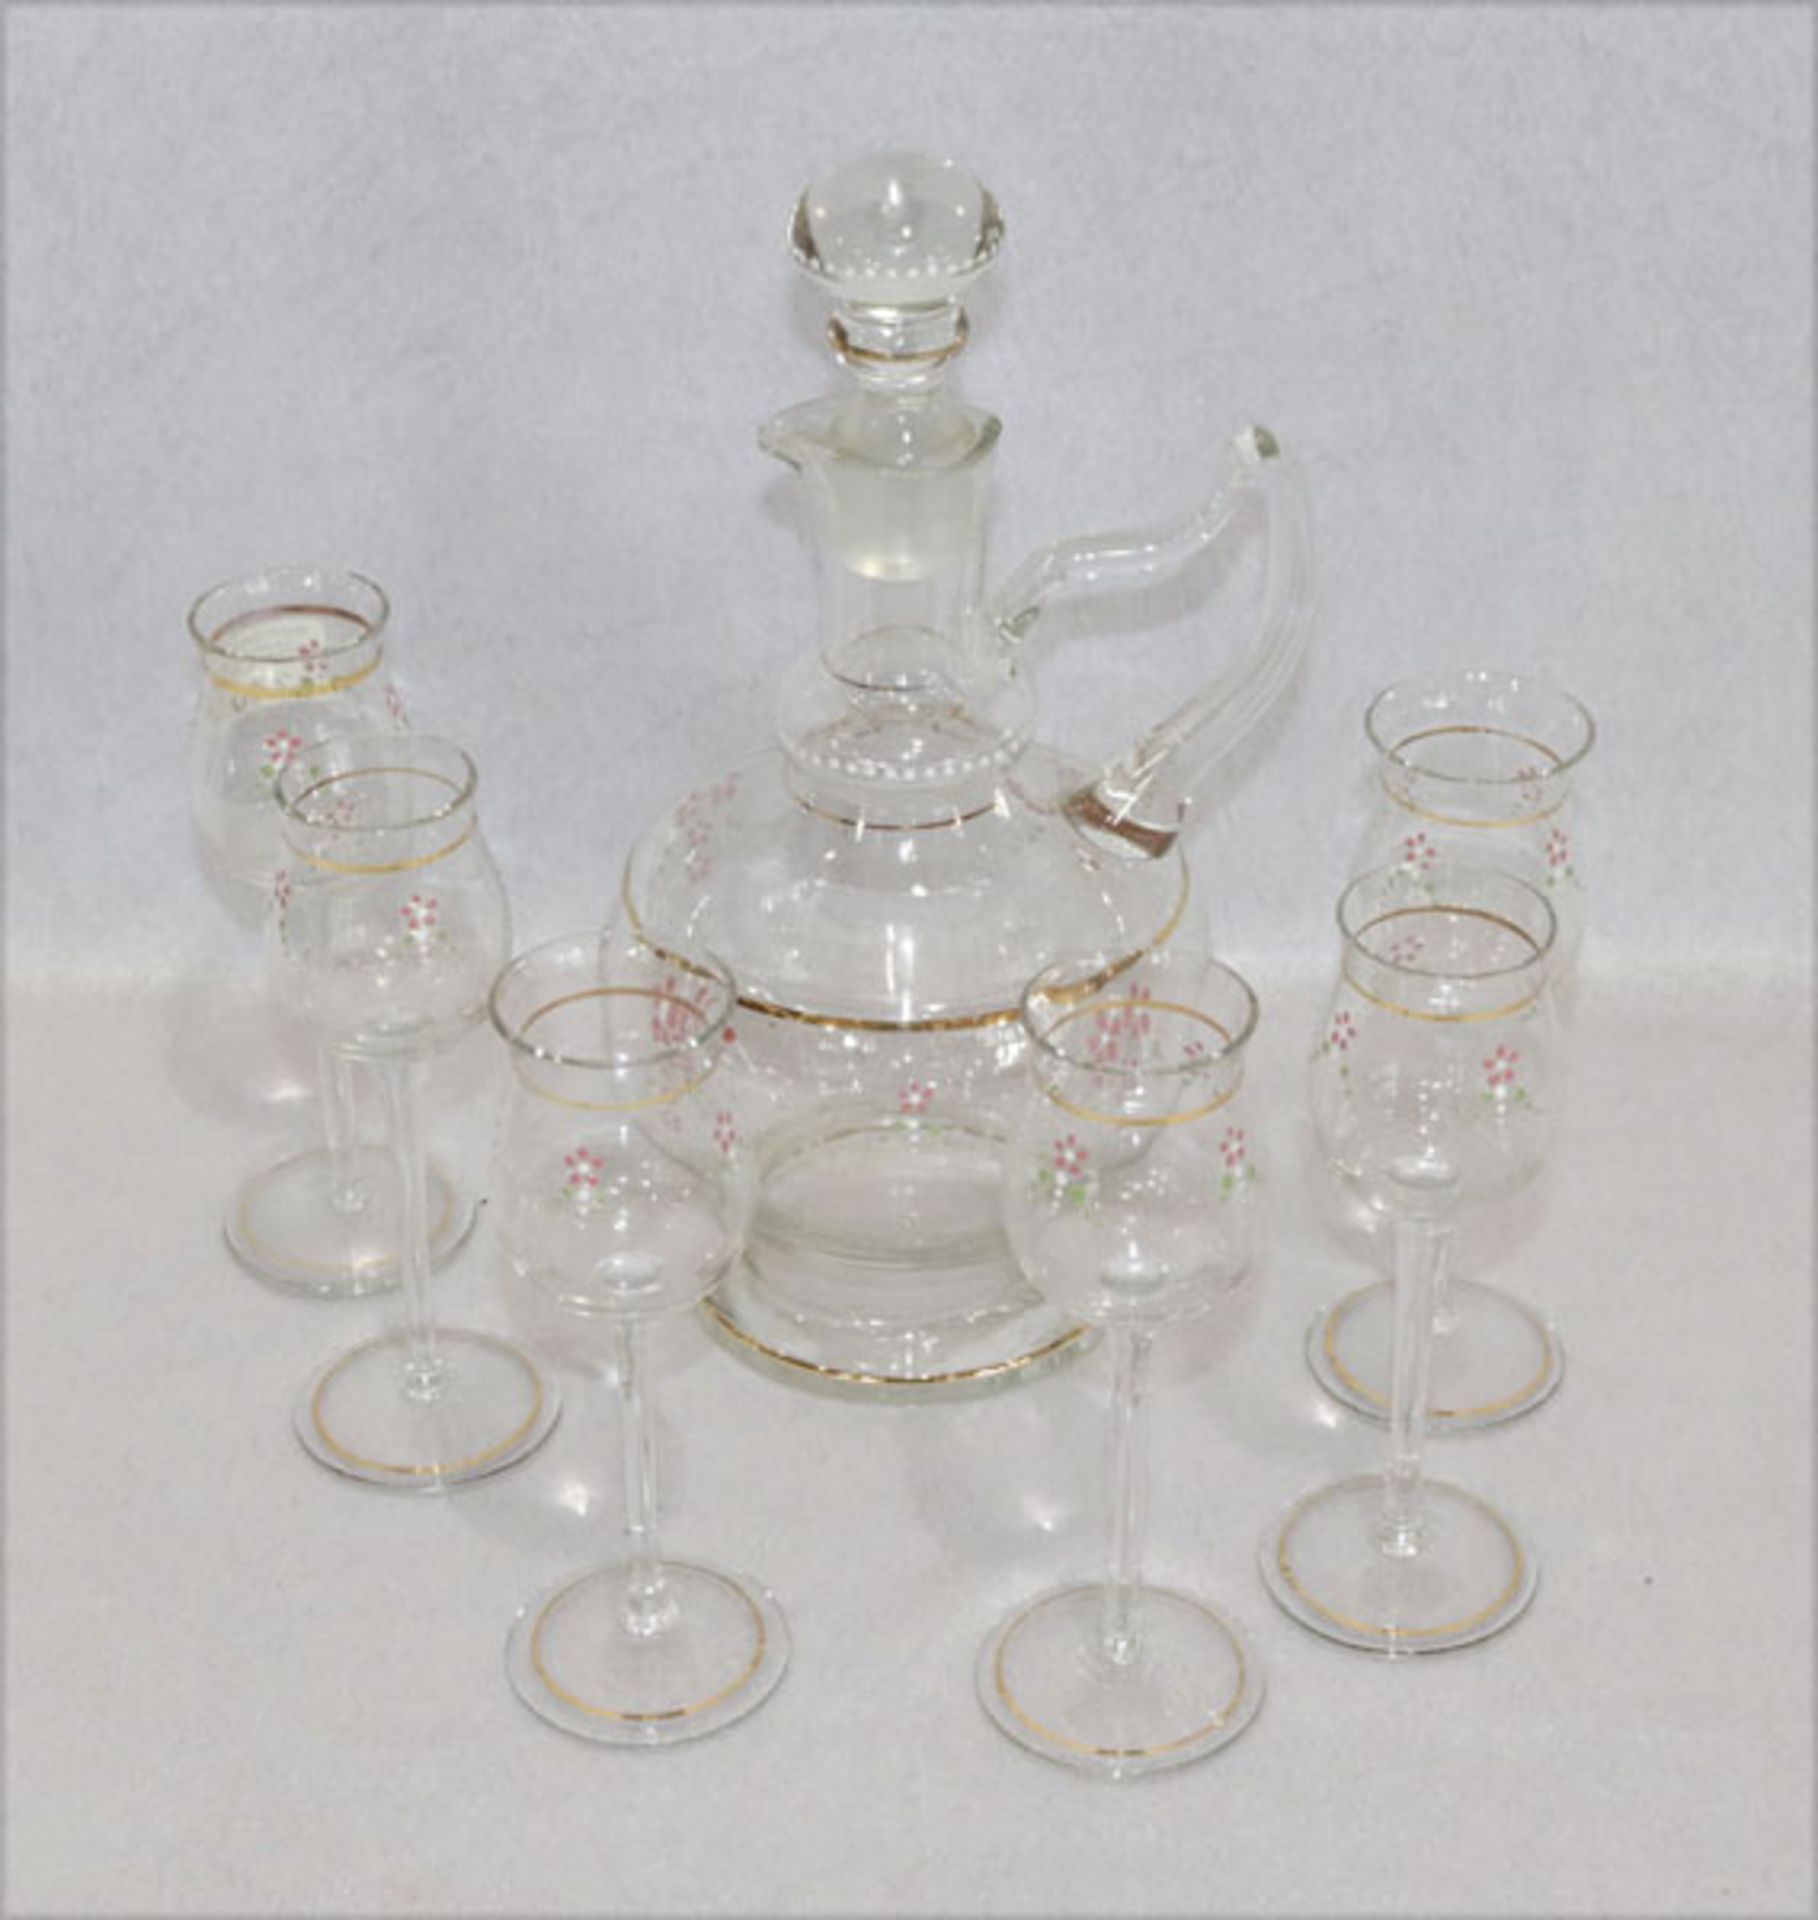 Glaskaraffe, H 29 cm, D 16 cm, und 6 passende Gläser, H 18 cm, D 6,5 cm, alles mit weiß/rose